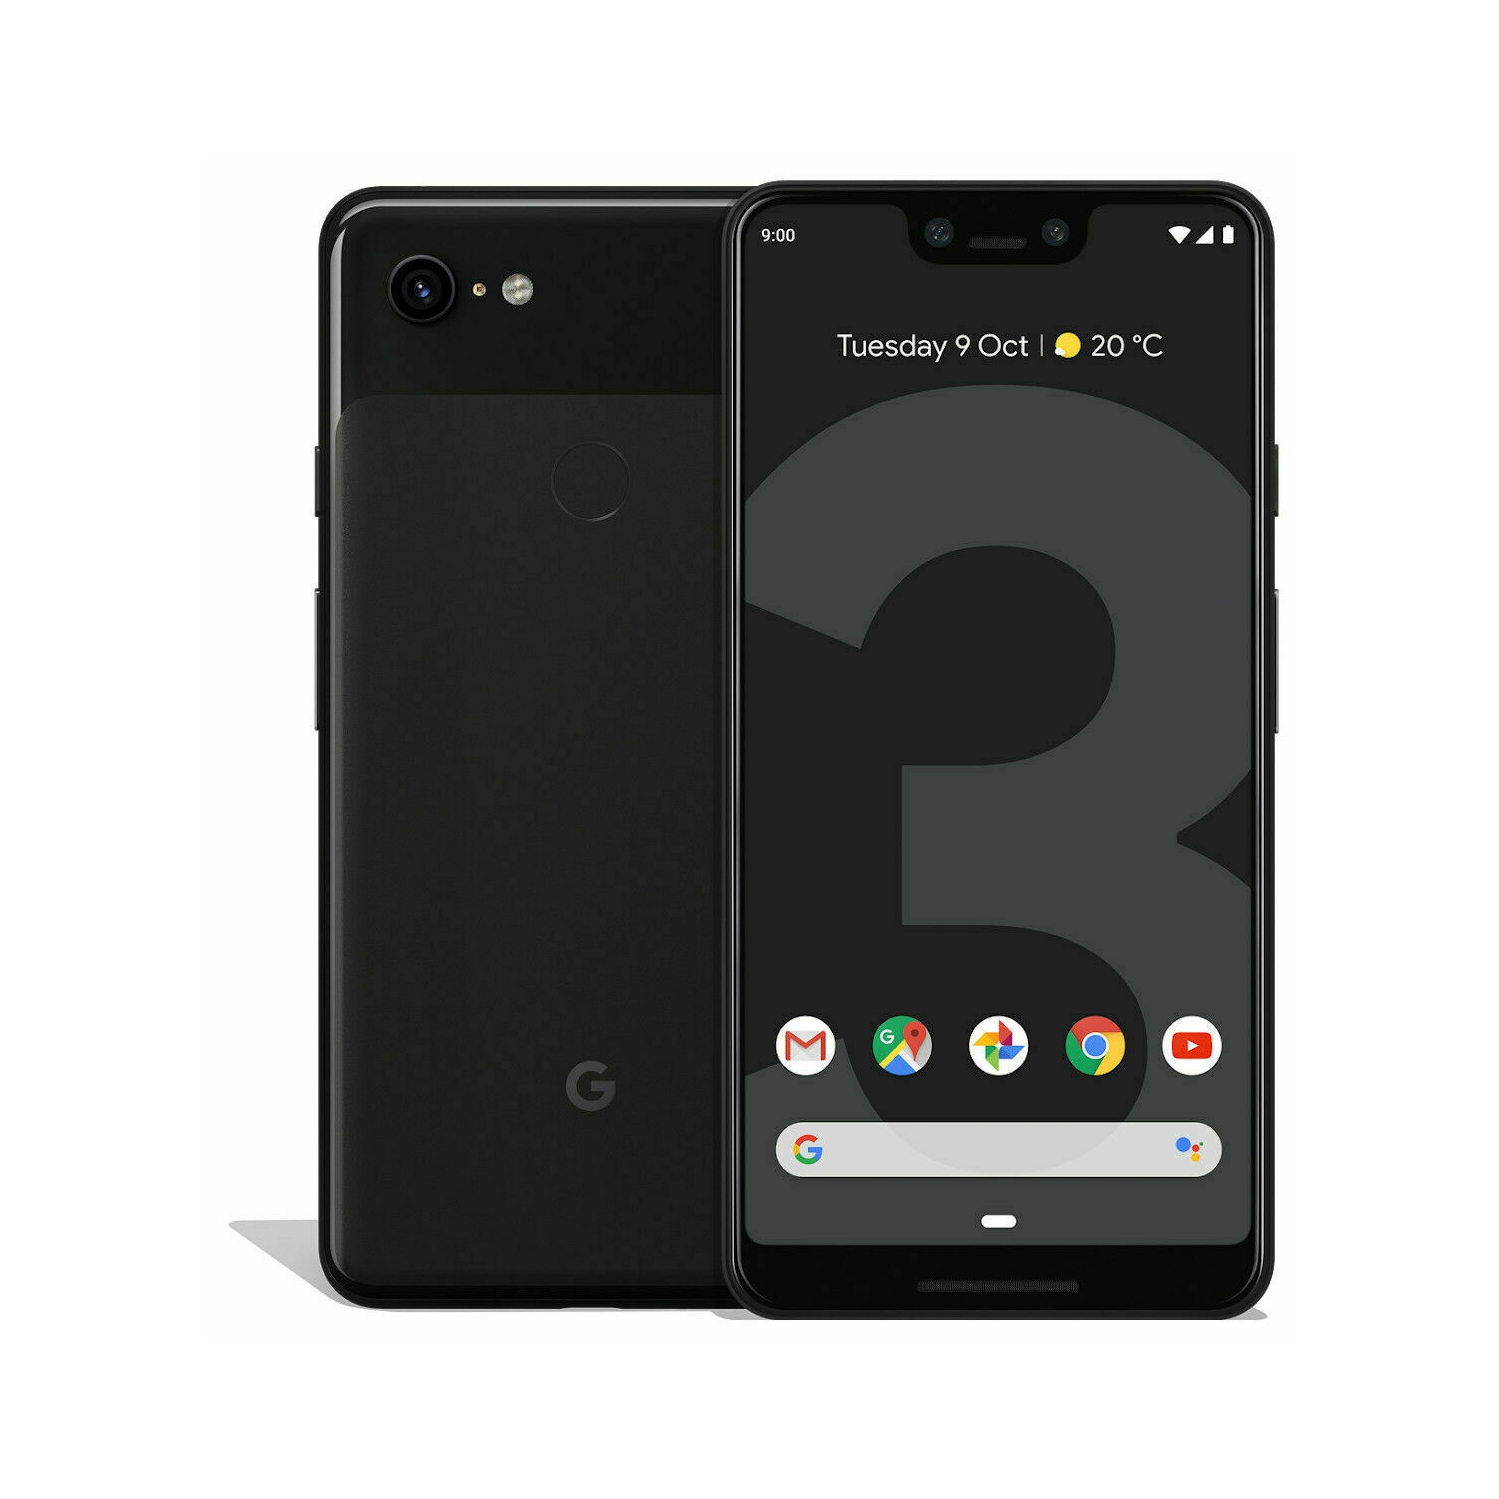 Google Pixel 3 XL 128GB Smartphone - Just Black - Unlocked - New